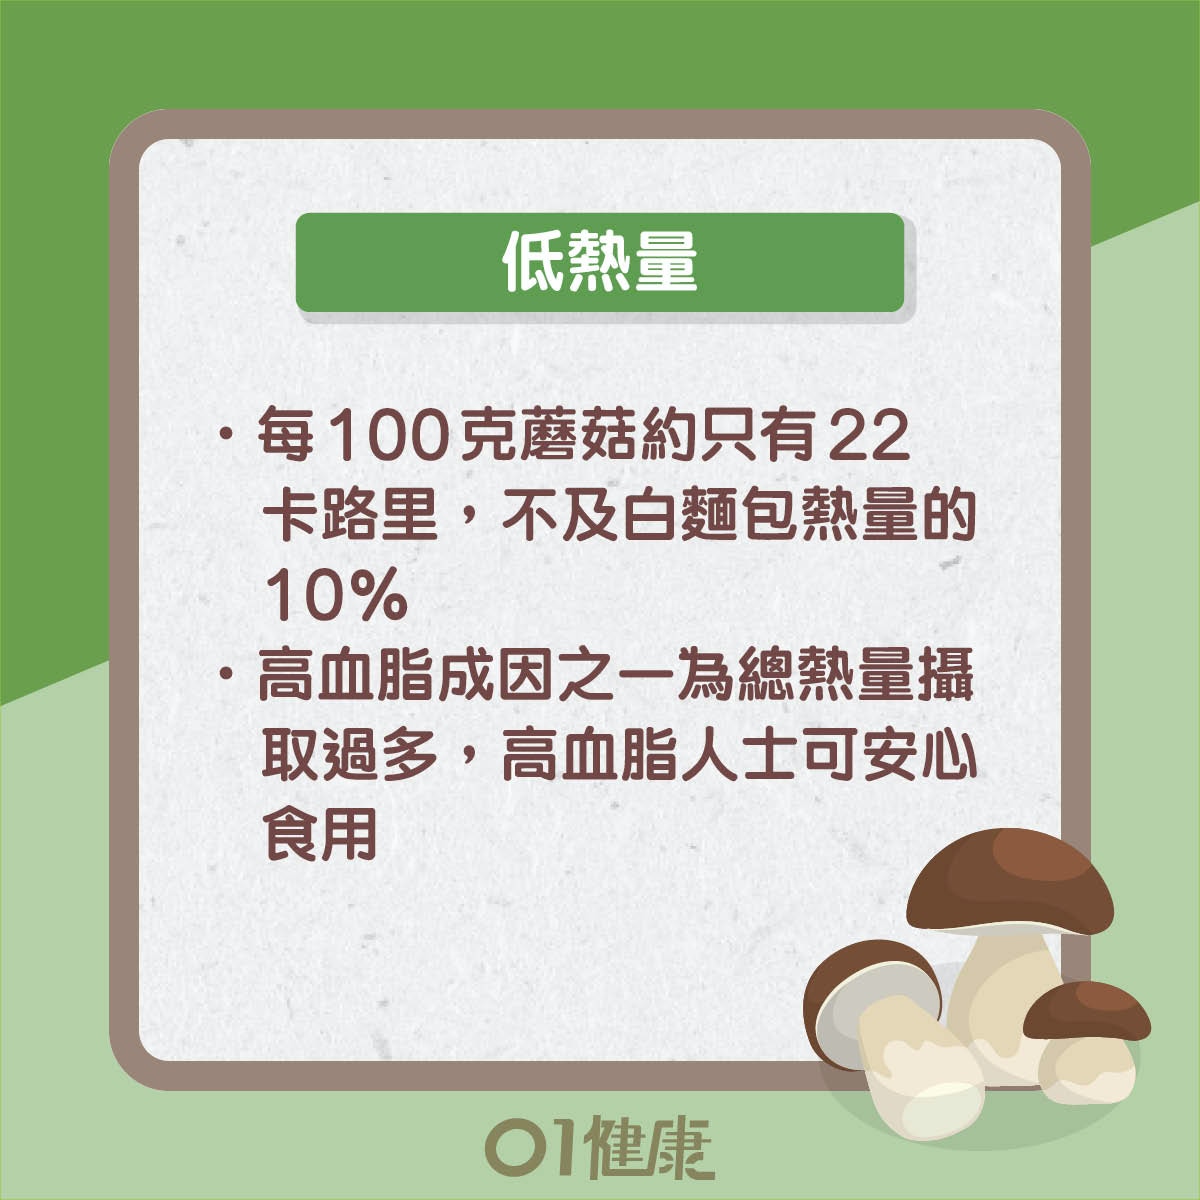 蘑菇：功效、卡路里、禁忌、副作用、食譜 | Healthy Matters 香港